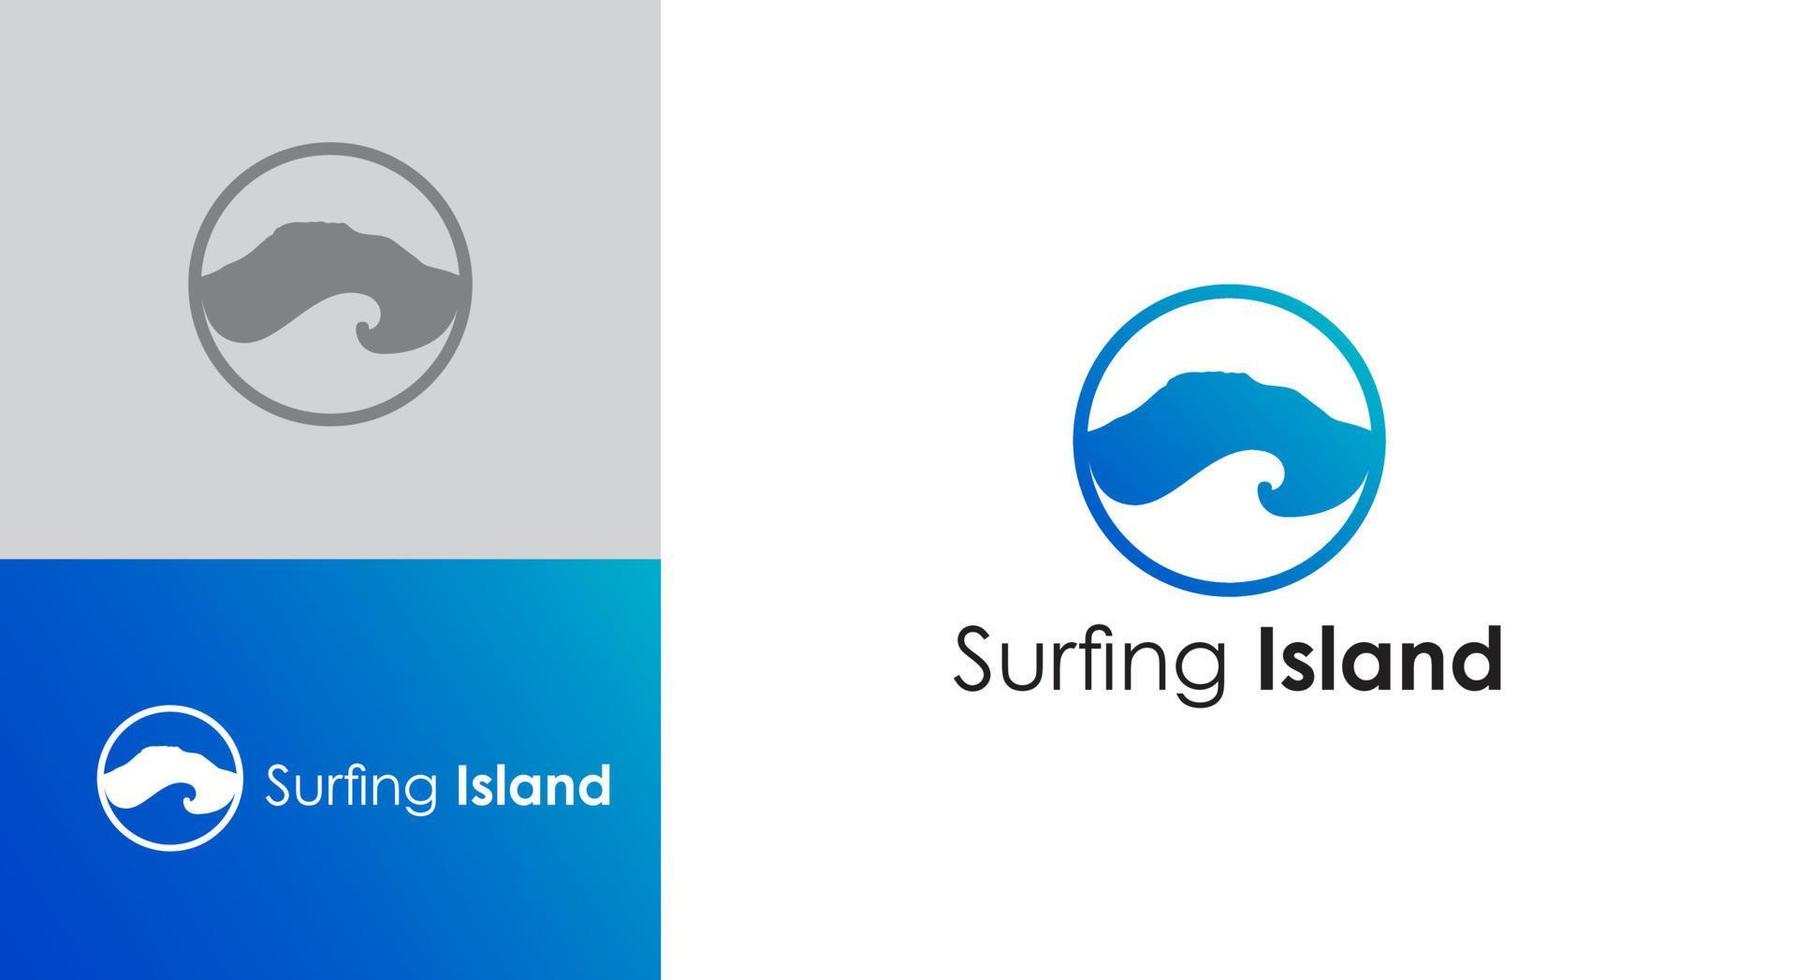 logo sjabloon met heuvels, golven in een cirkel. logo surf eiland vector